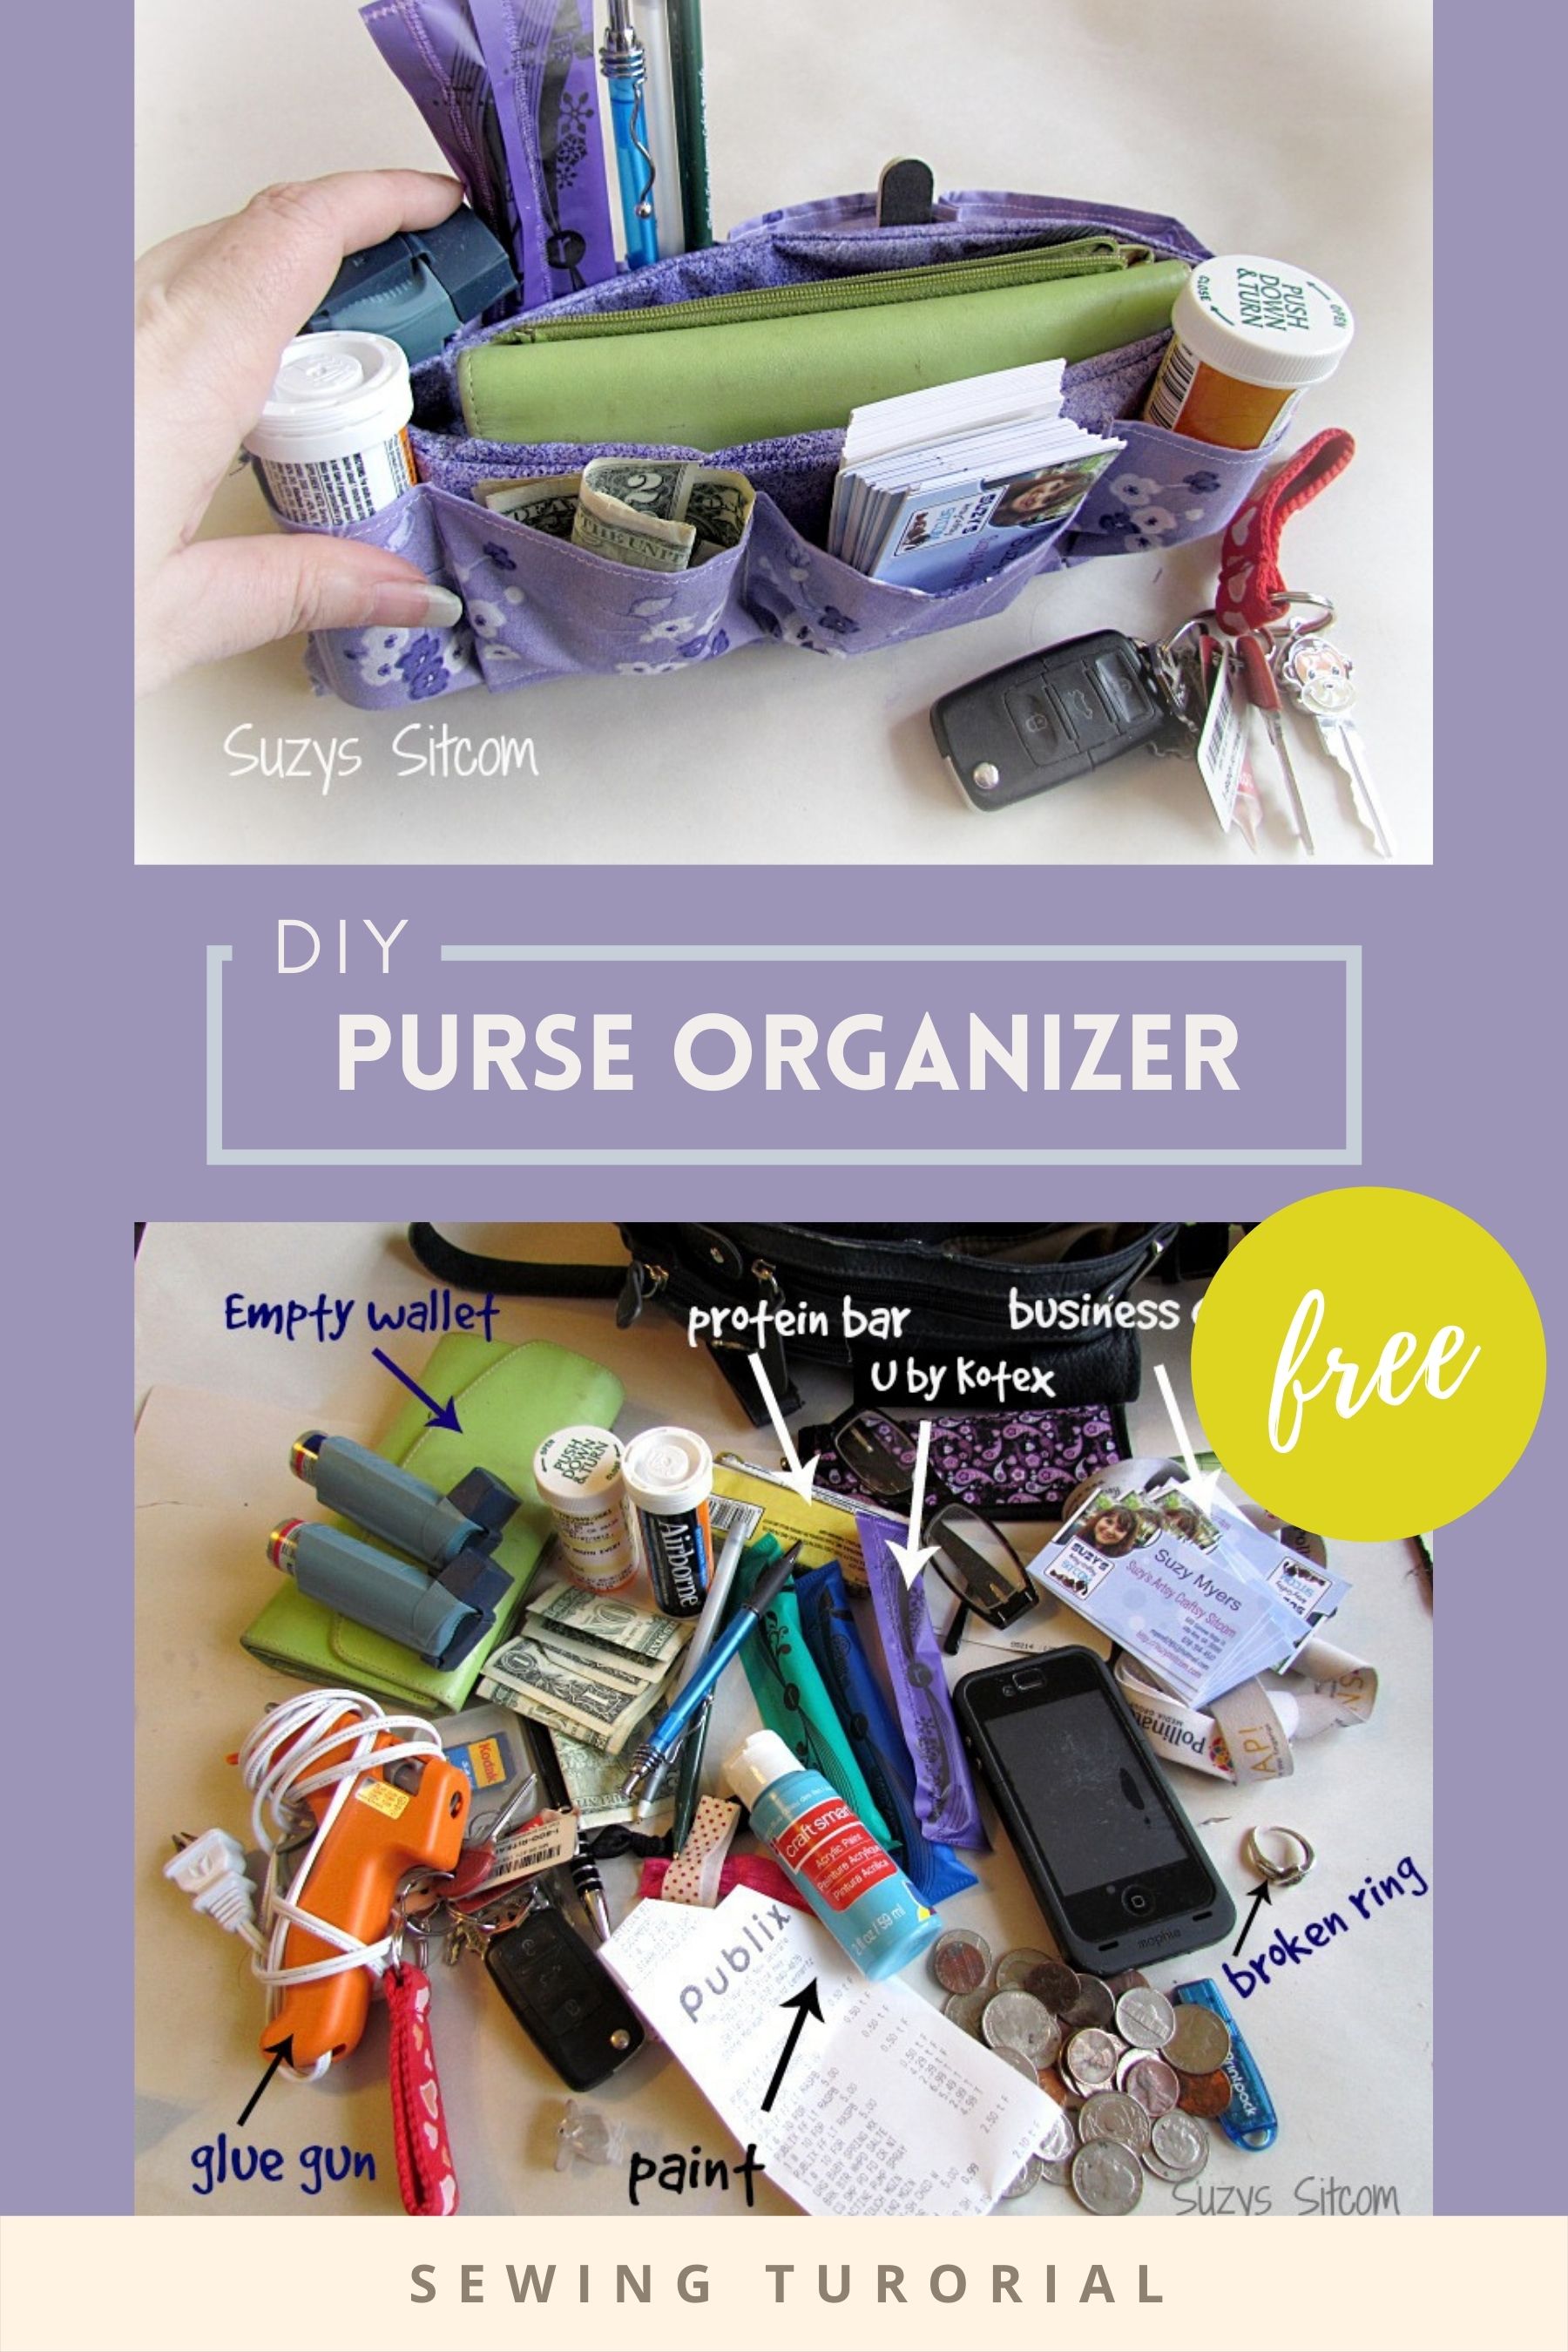 DIY Purse Organizer FREE sewing tutorial